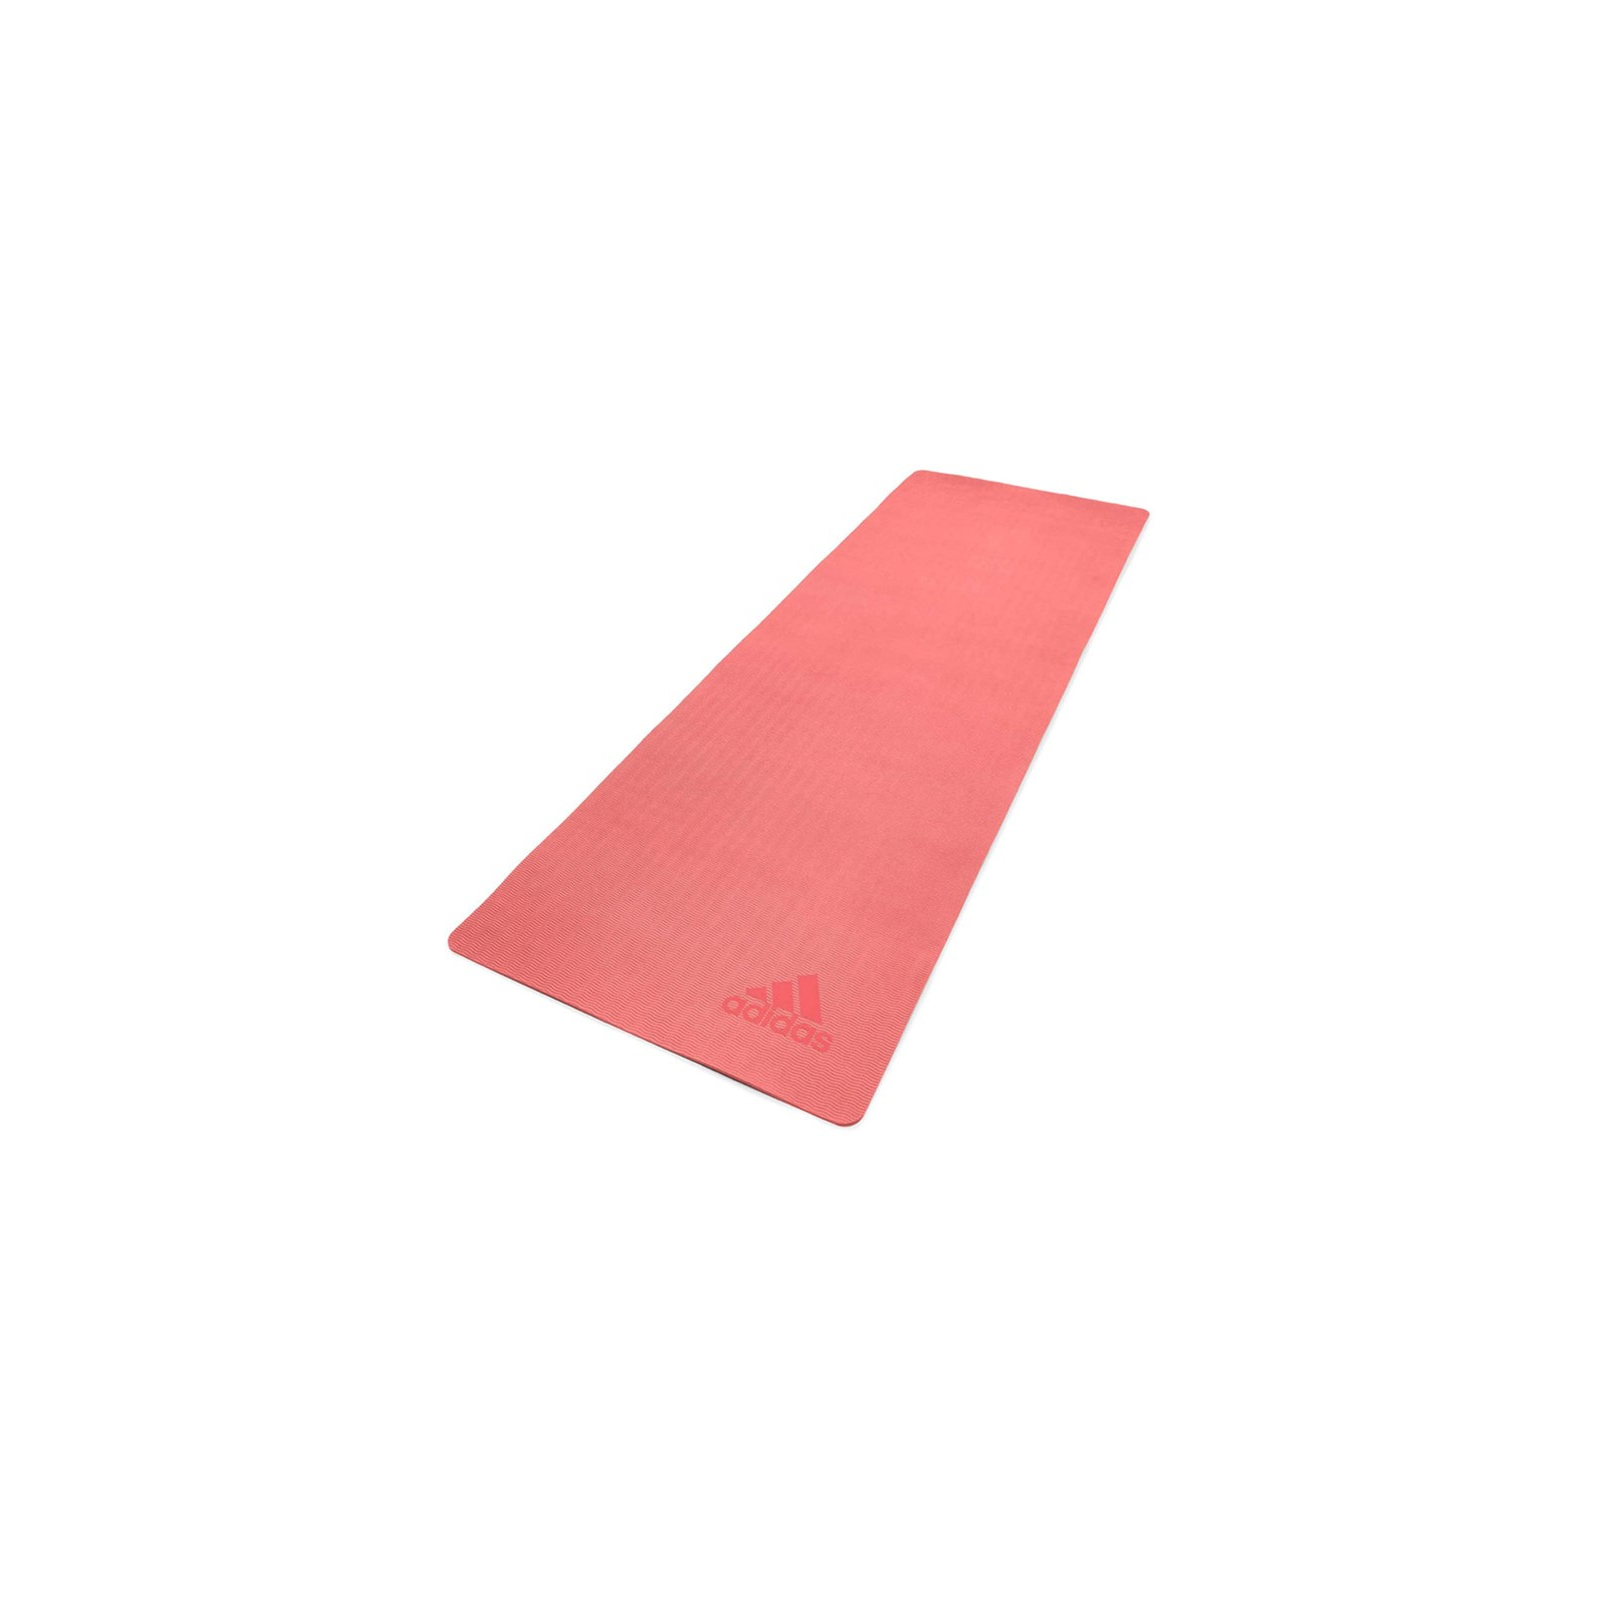 Коврик для йоги Adidas Premium Yoga Mat Уні 176 х 61 х 0,5 см Червоний (ADYG-10300MR)